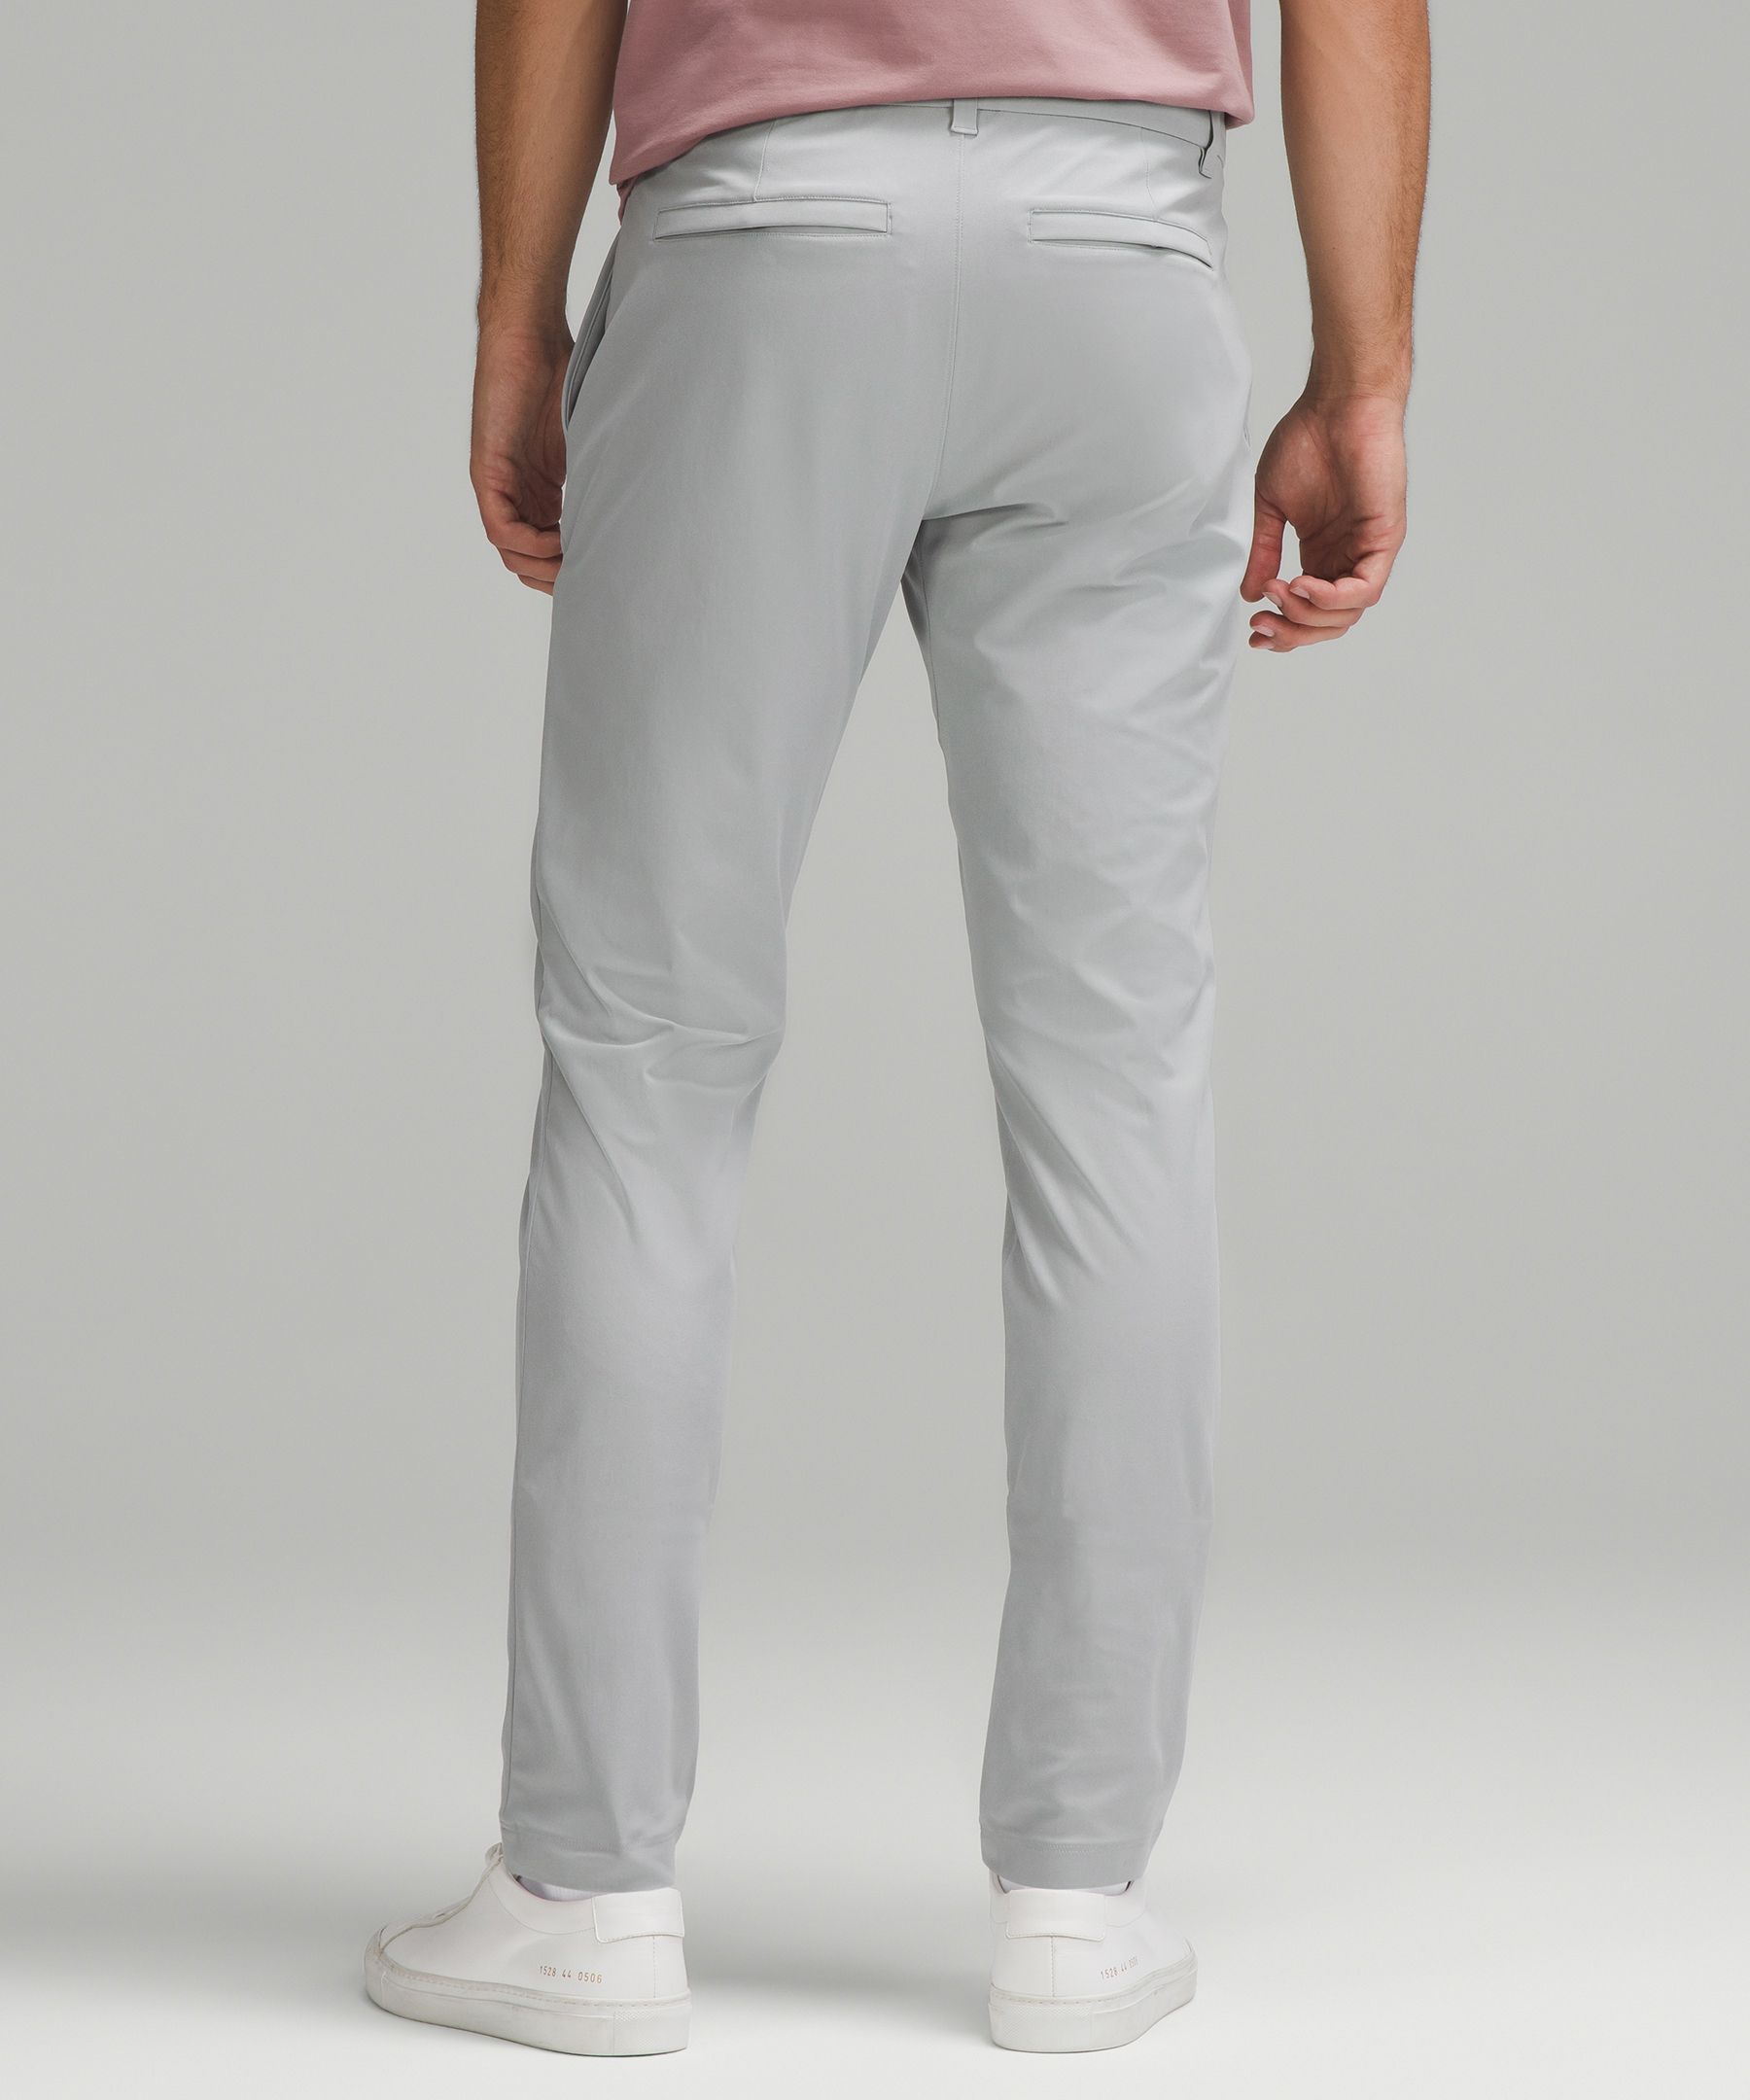 Lululemon Commission Slim-fit Pants 30 Warpstreme - Asphalt Grey